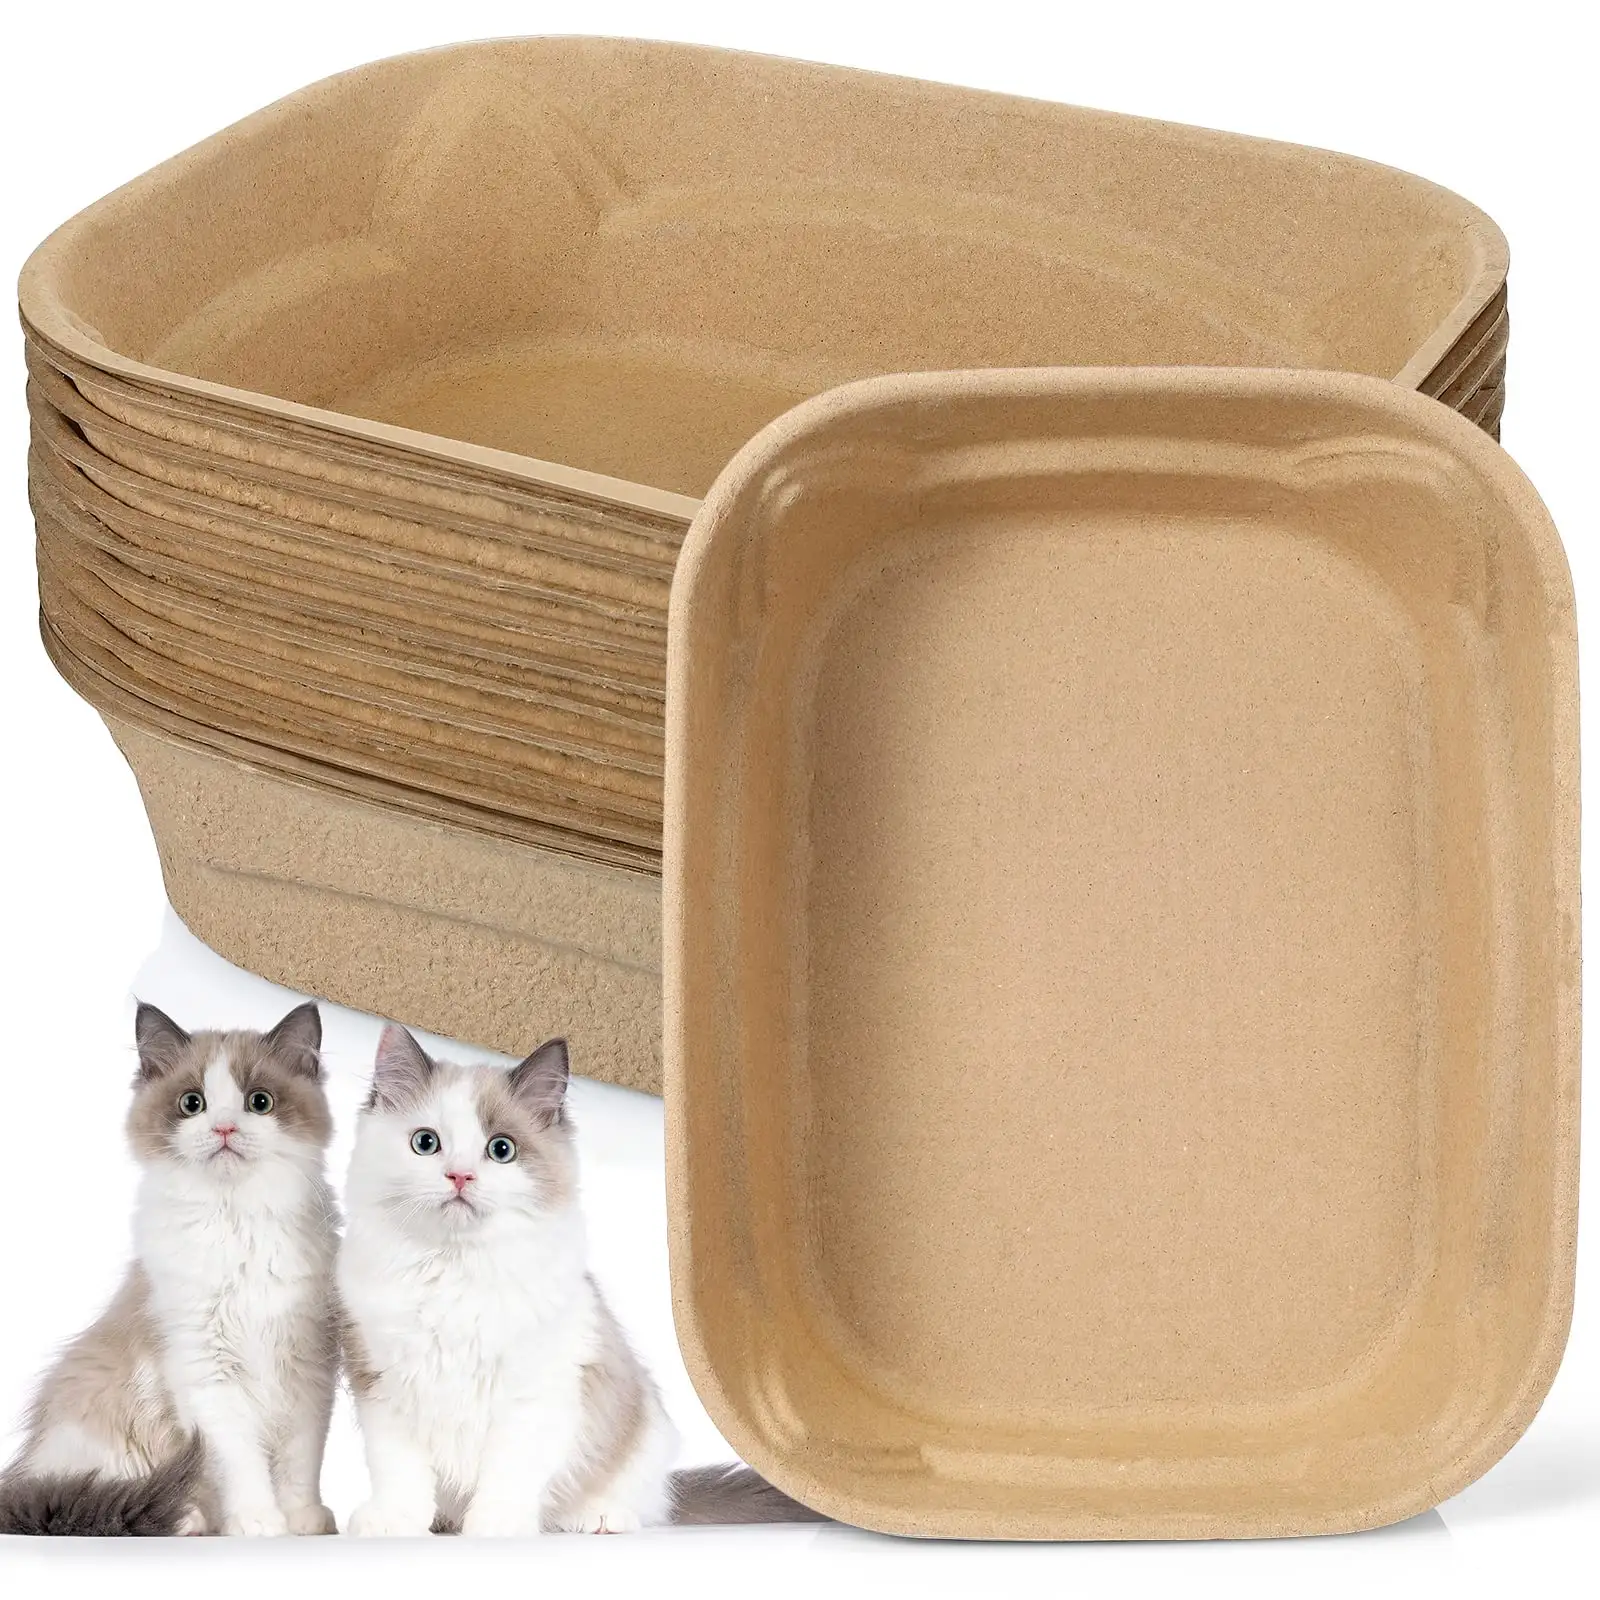 Grands bacs à litière jetables portables en papier pour chat, doublures de bac à litière pour chat pour voyage à la maison en voiture bac à litière jetable pour chat